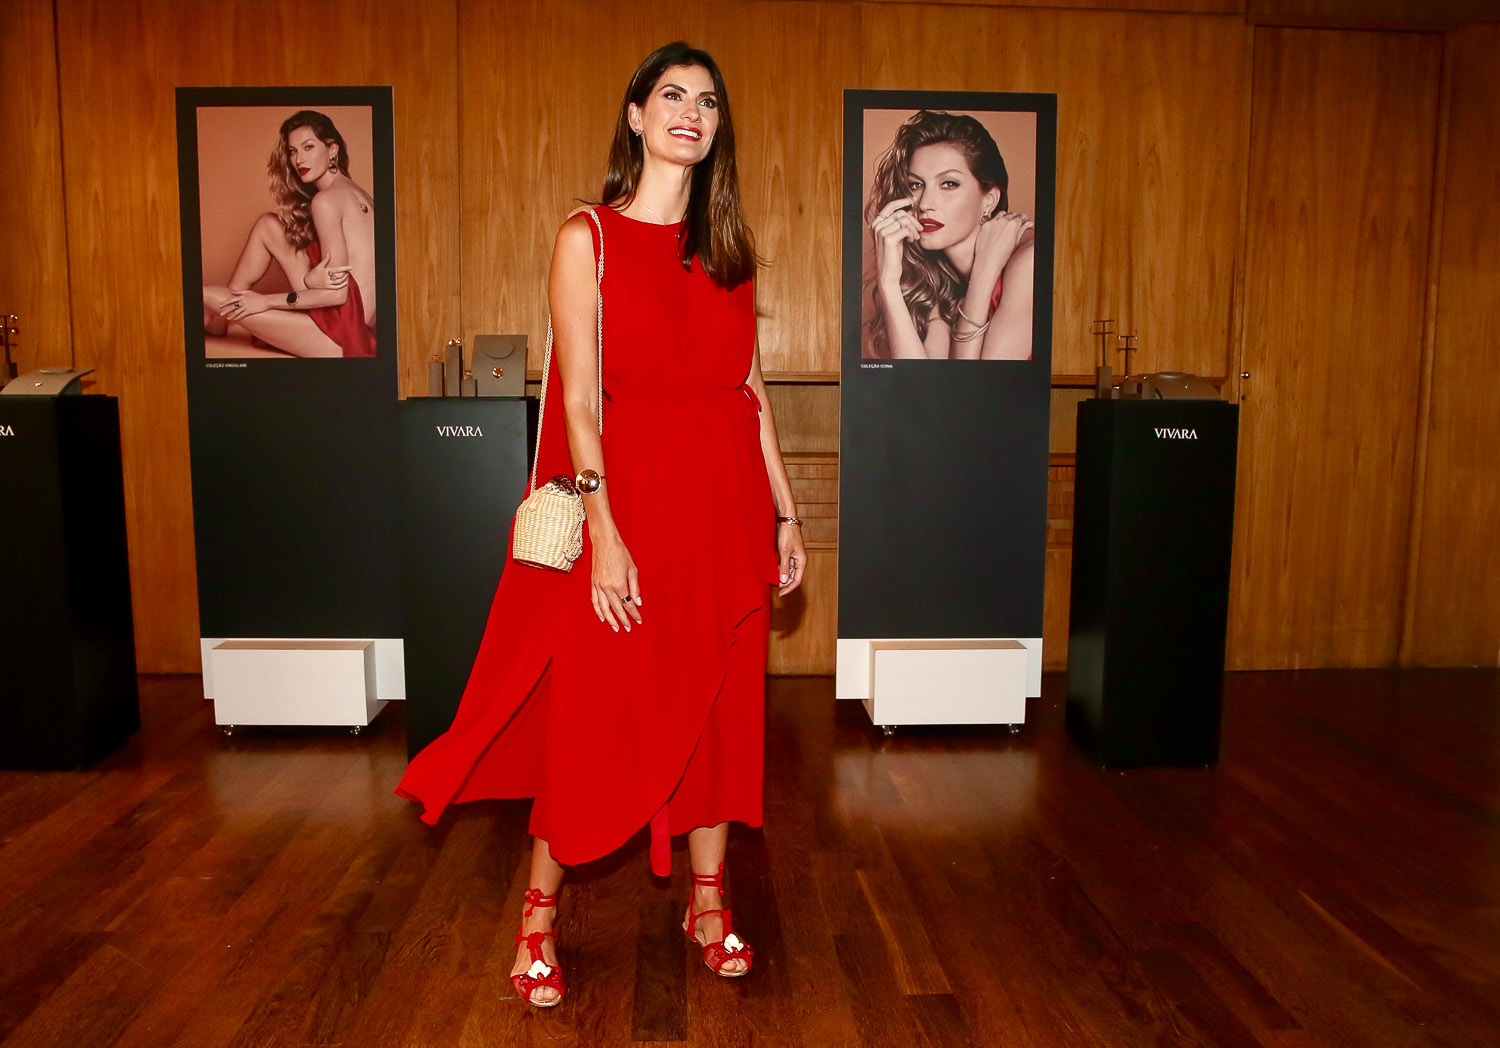 Isabella Fiorentino aposta em lindo look vermelho para evento